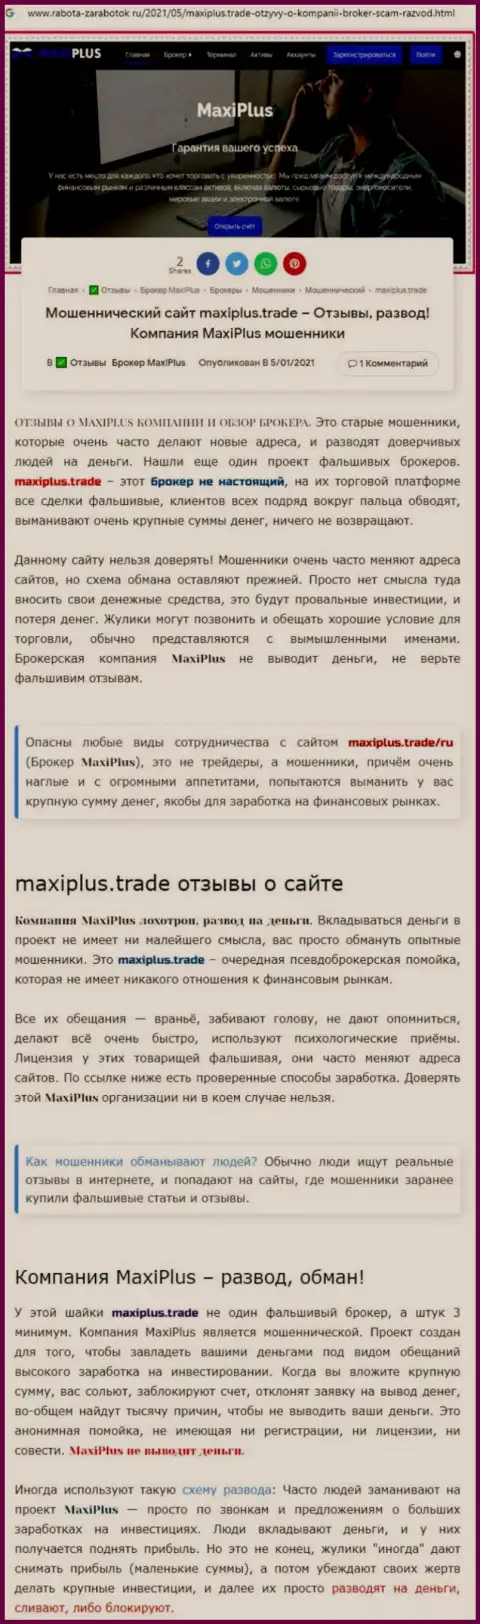 Maxi Plus - это МОШЕННИКИ ! Принципы работы КИДАЛОВА (обзор)